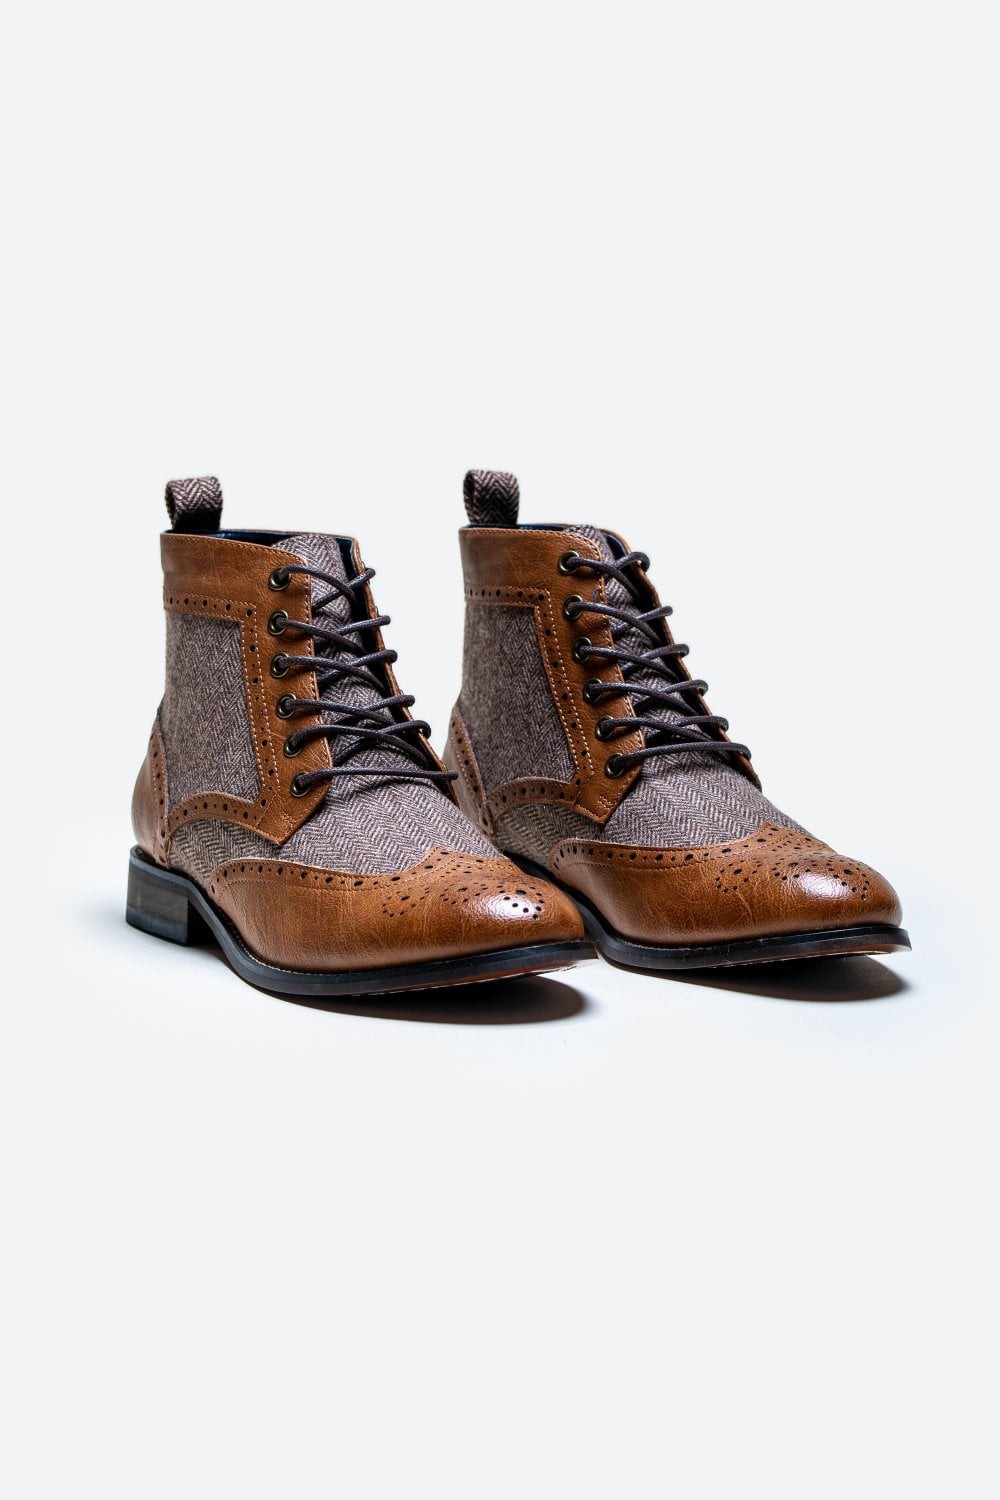 Men's Ankle Boots Lace Up Brogue Footwear - Bräunen